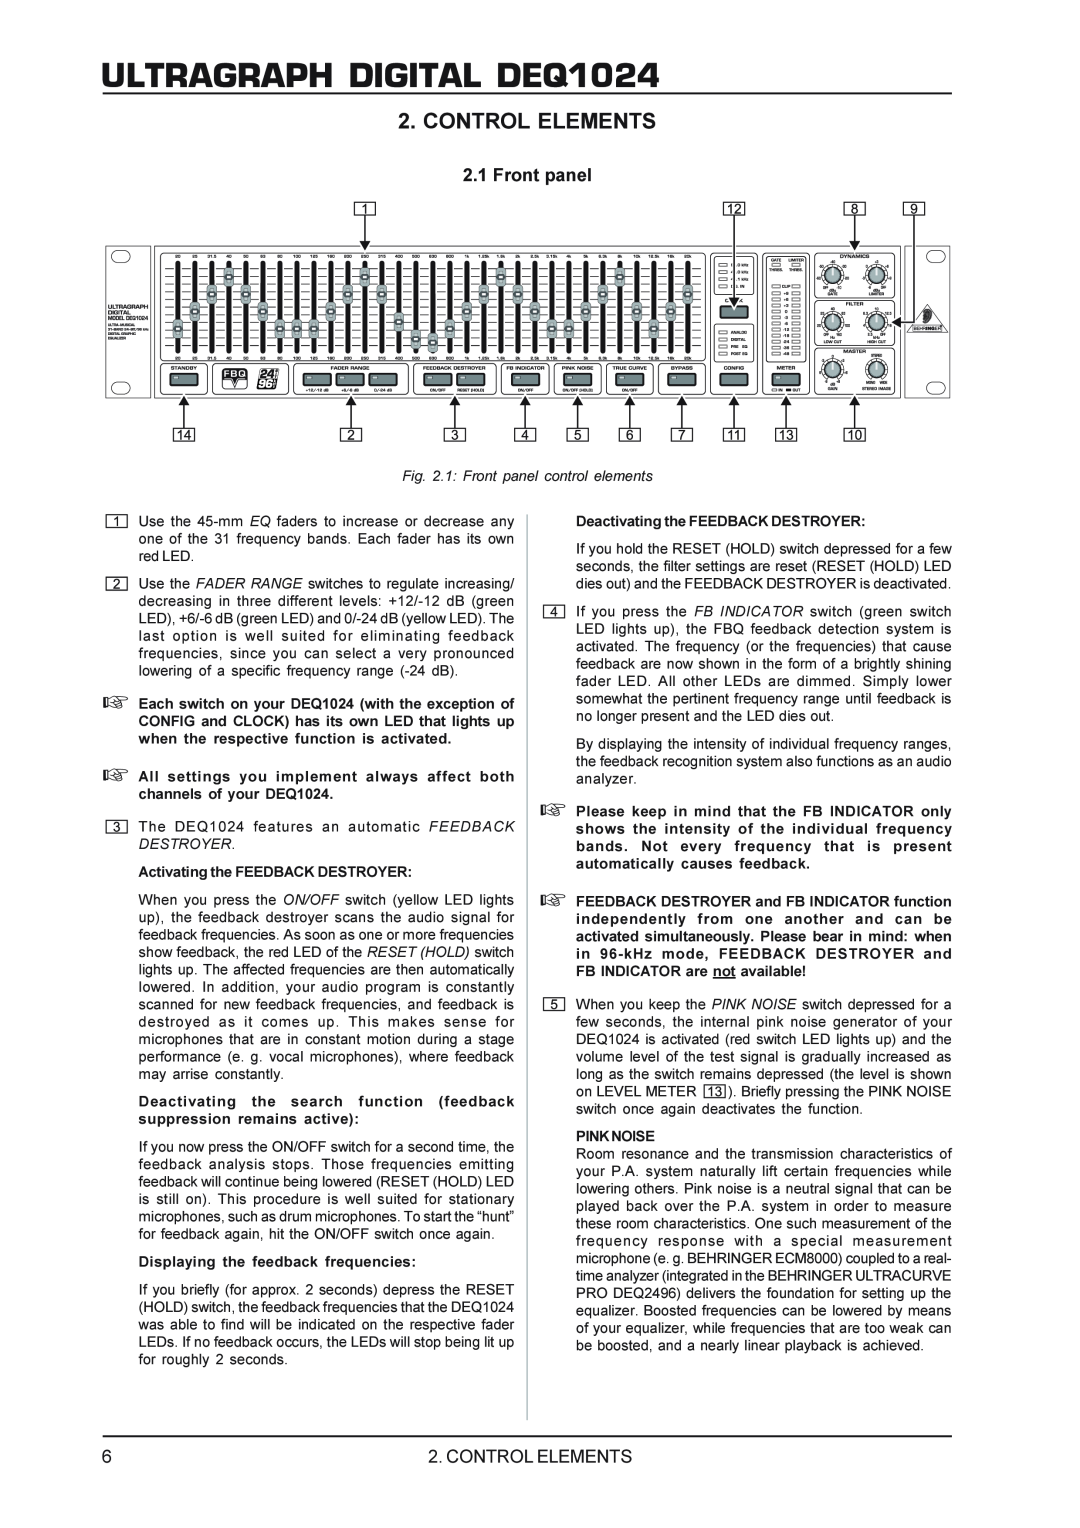 Behringer manual Control Elements, ULTRAGRAPH DIGITAL DEQ1024, 1 Front panel control elements 